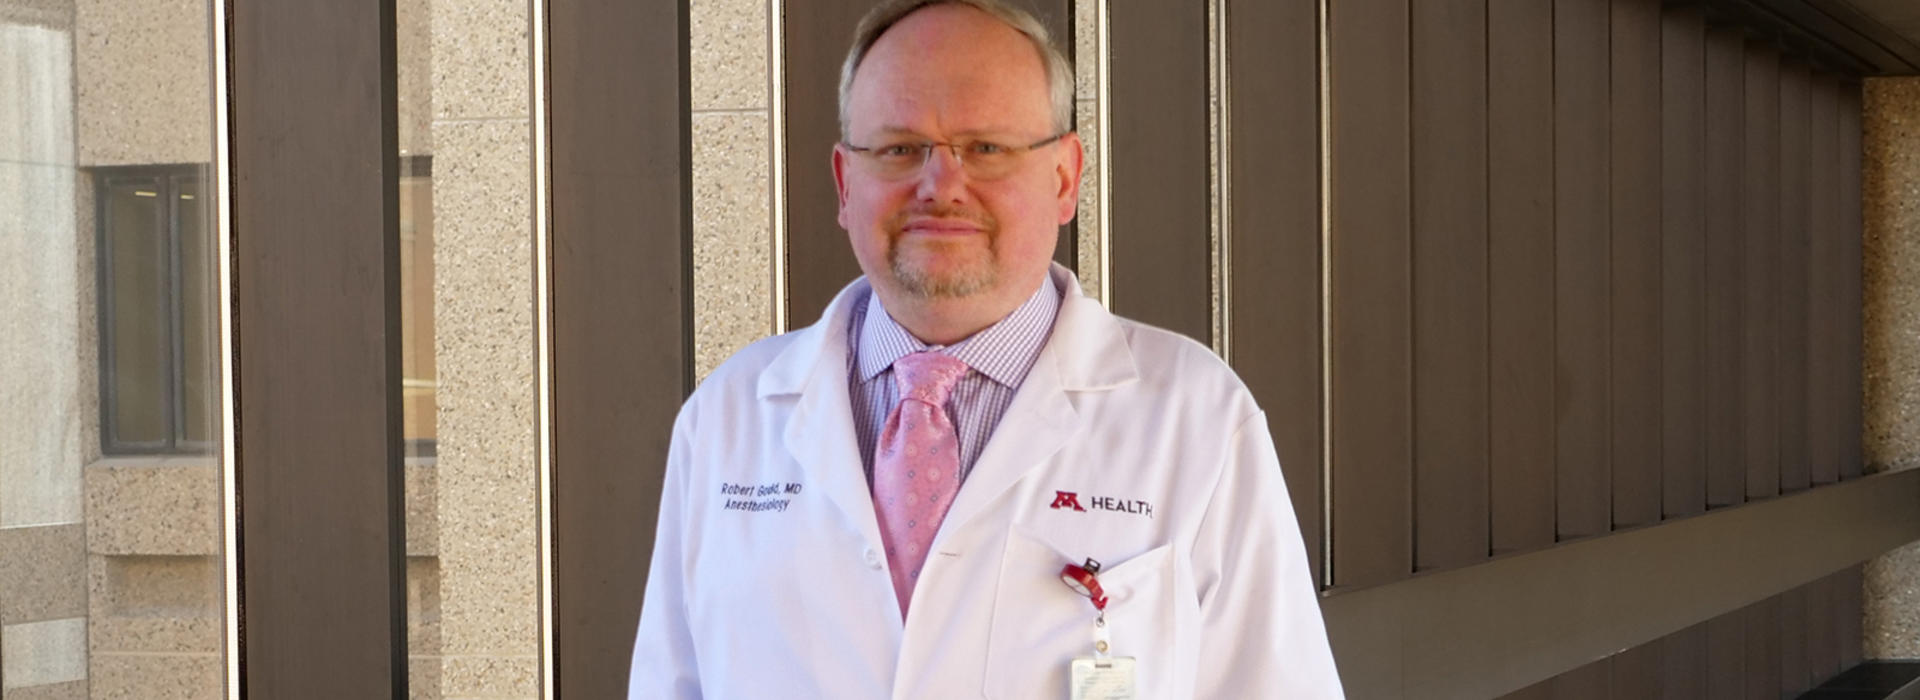 Dr. Robert Gould